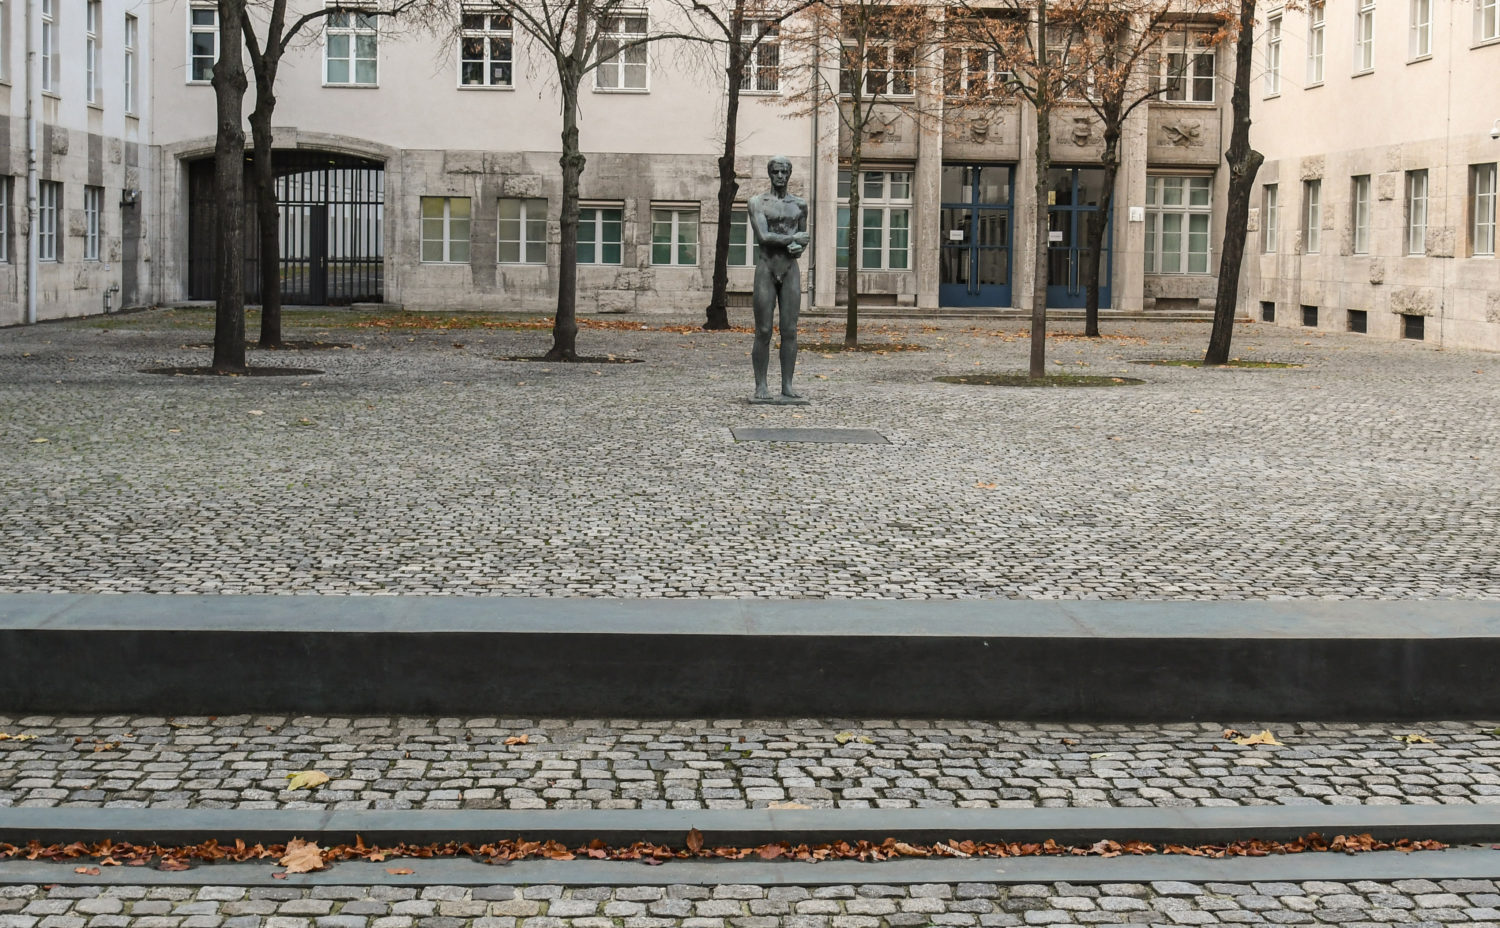 Die Gedenkstätte ist im sogenannten Bendlerblock untergebracht. Foto: imago images/Winfried Rothermel

